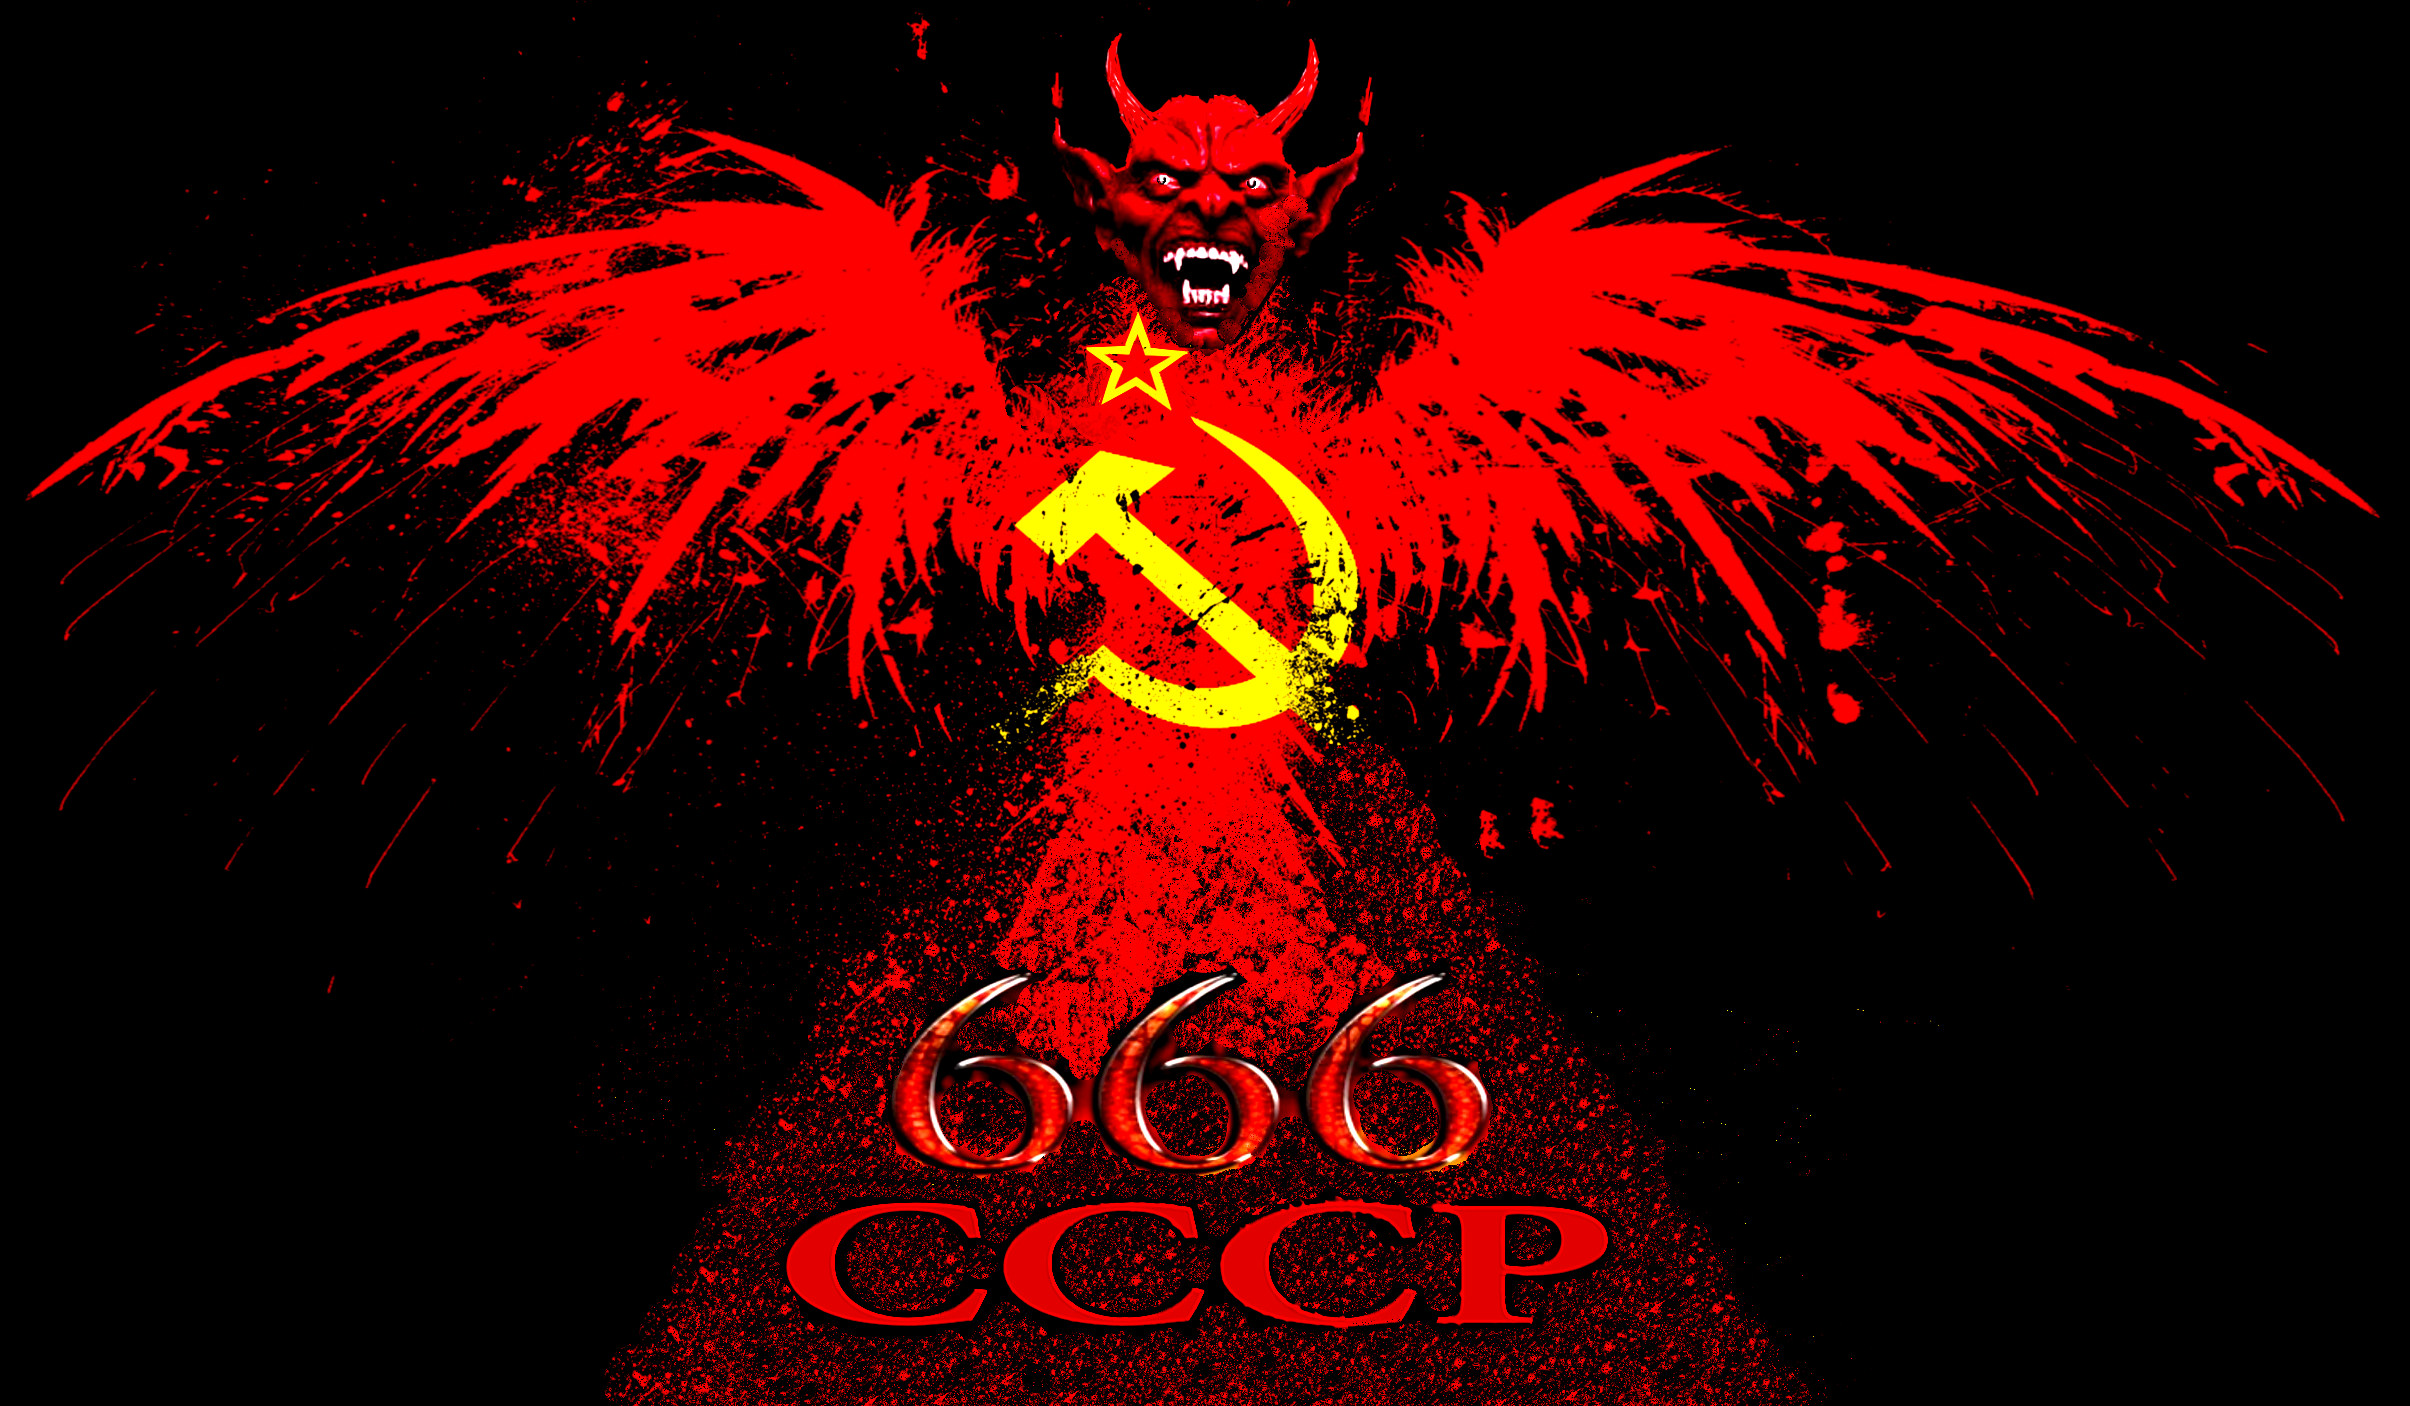 CCCР-Дьявол 666.